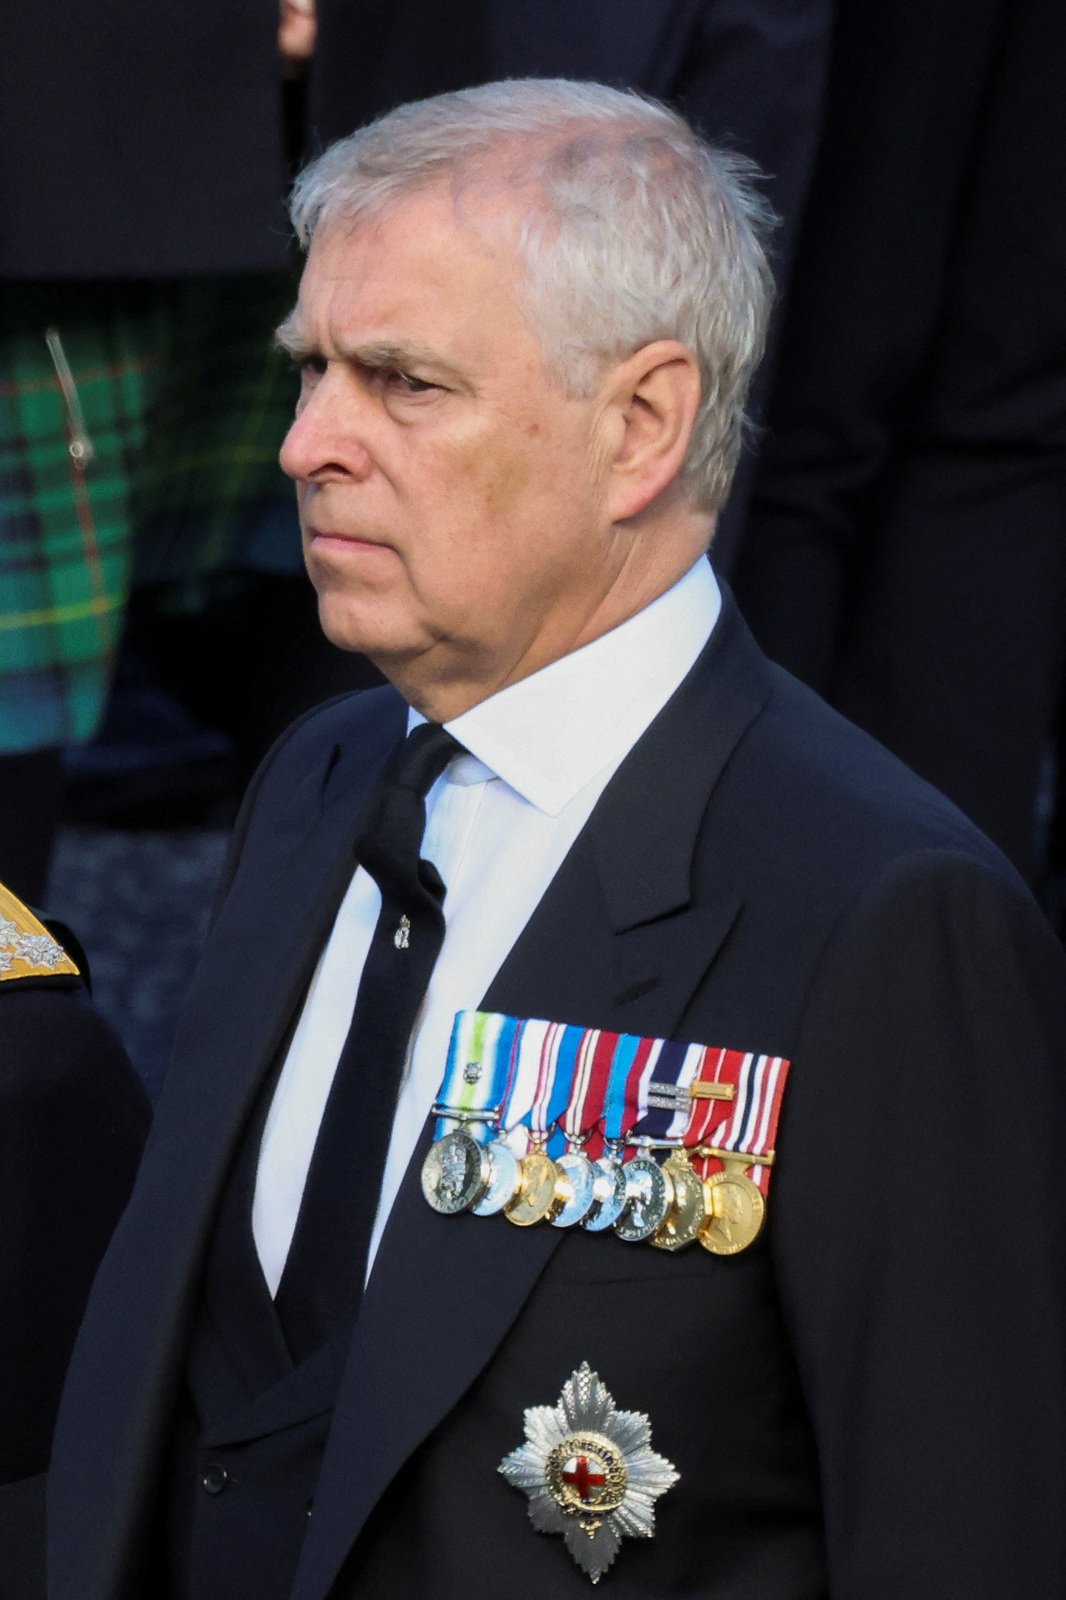 Princ Andrew musel mít na sobě sako místo uniformy